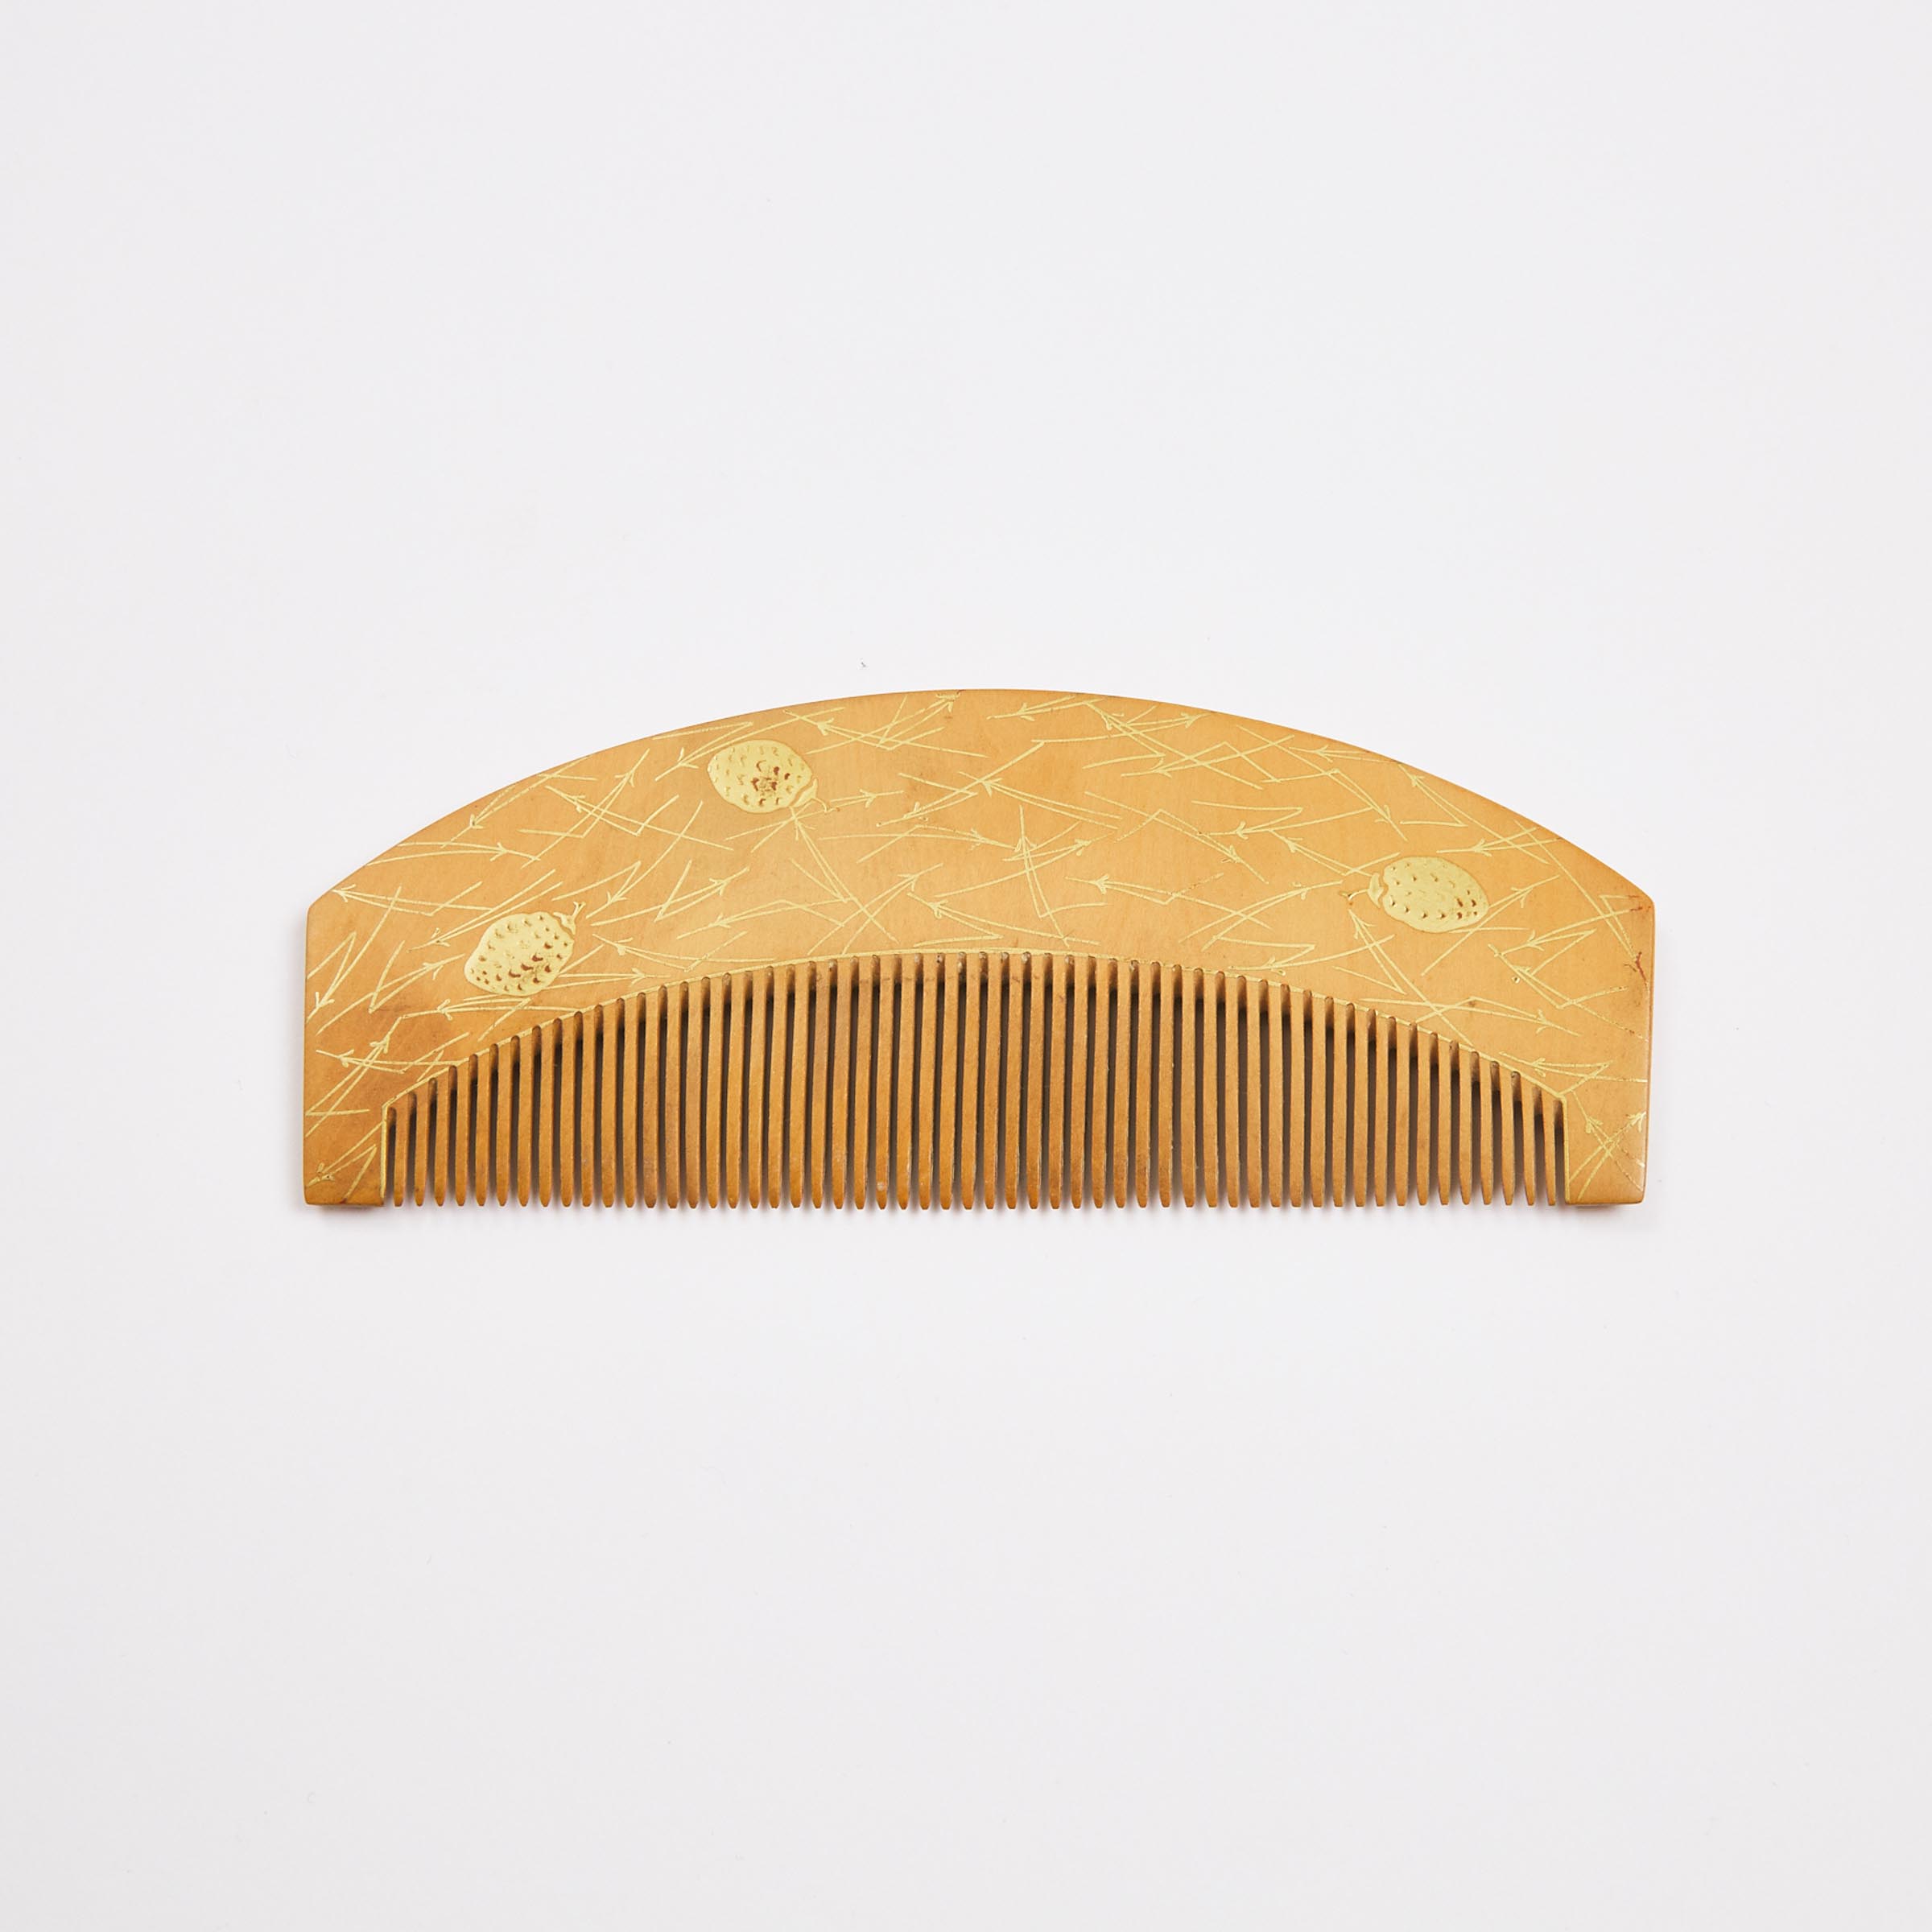 A Japanese Boxwood Comb Kushi  3ac59f